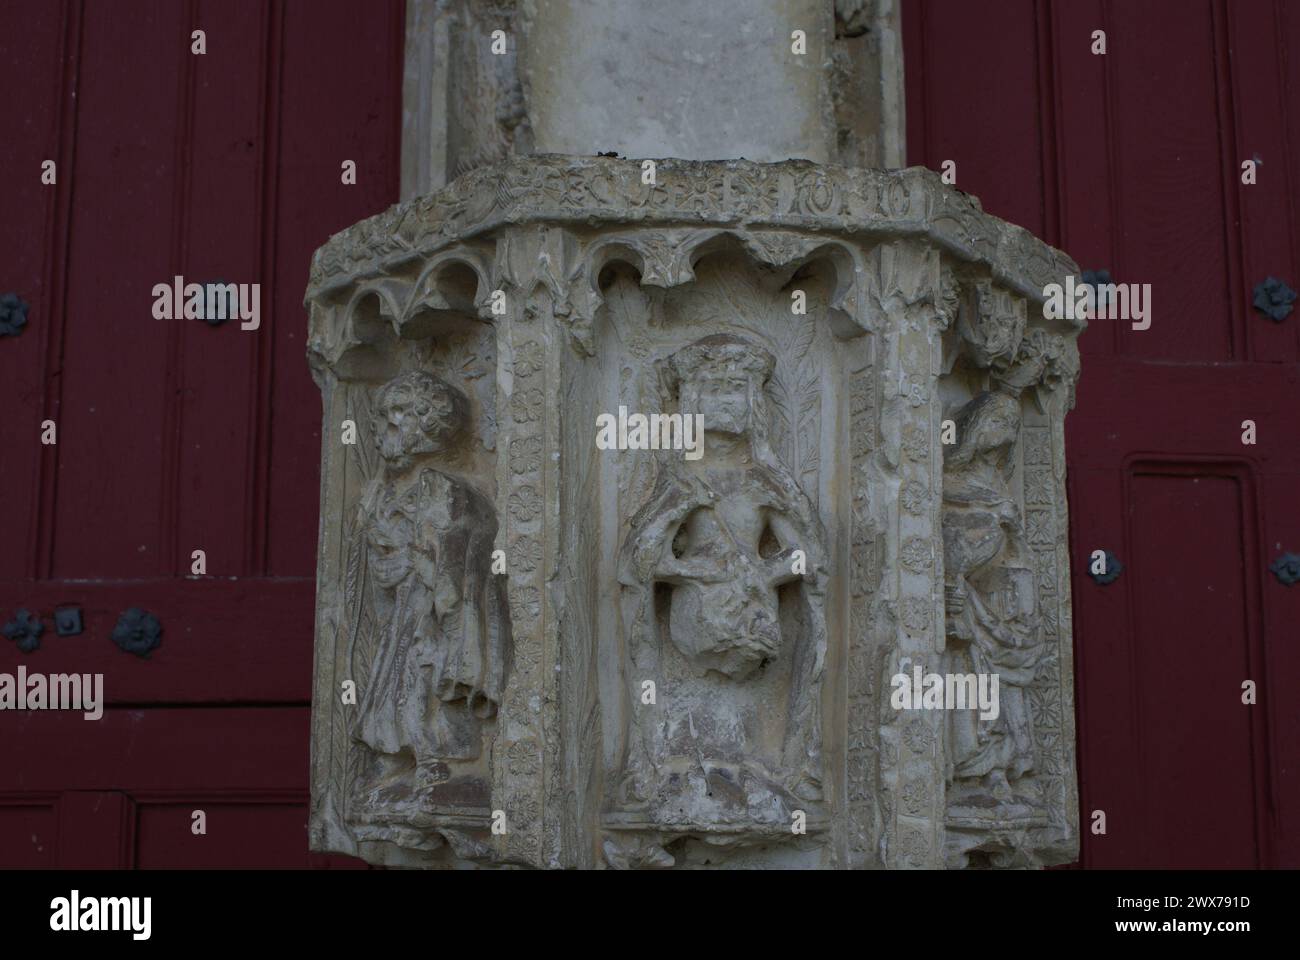 L’église Saint-Pierre-aux-liens a été édifiée au début du XVIe s. avec des matériaux locaux, soubassement en maconnerie de silex avec mortier de chaux Foto Stock